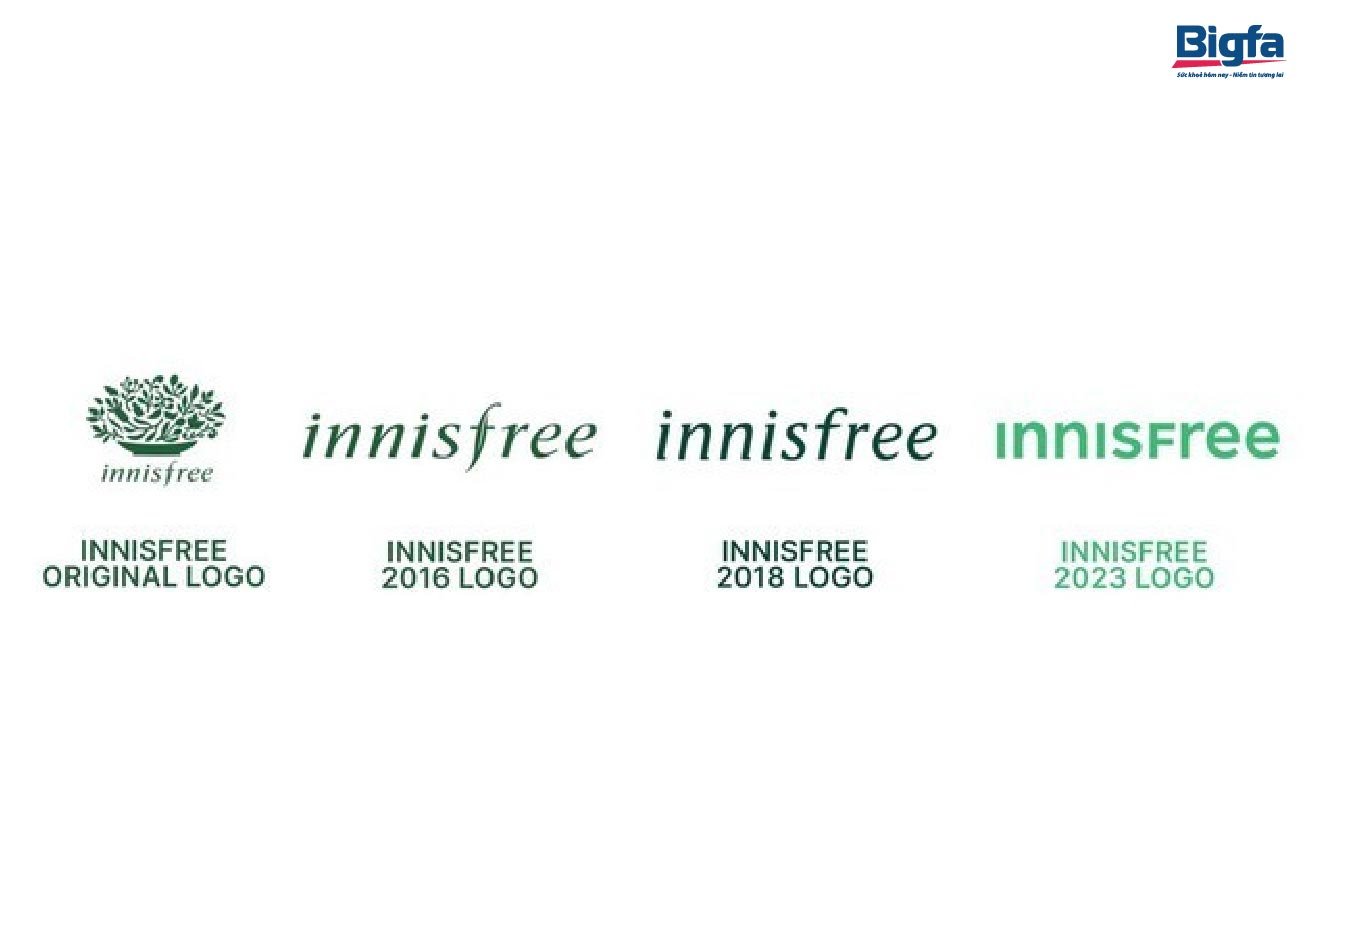 Quá trình thay đổi logo của Innisfree qua các năm